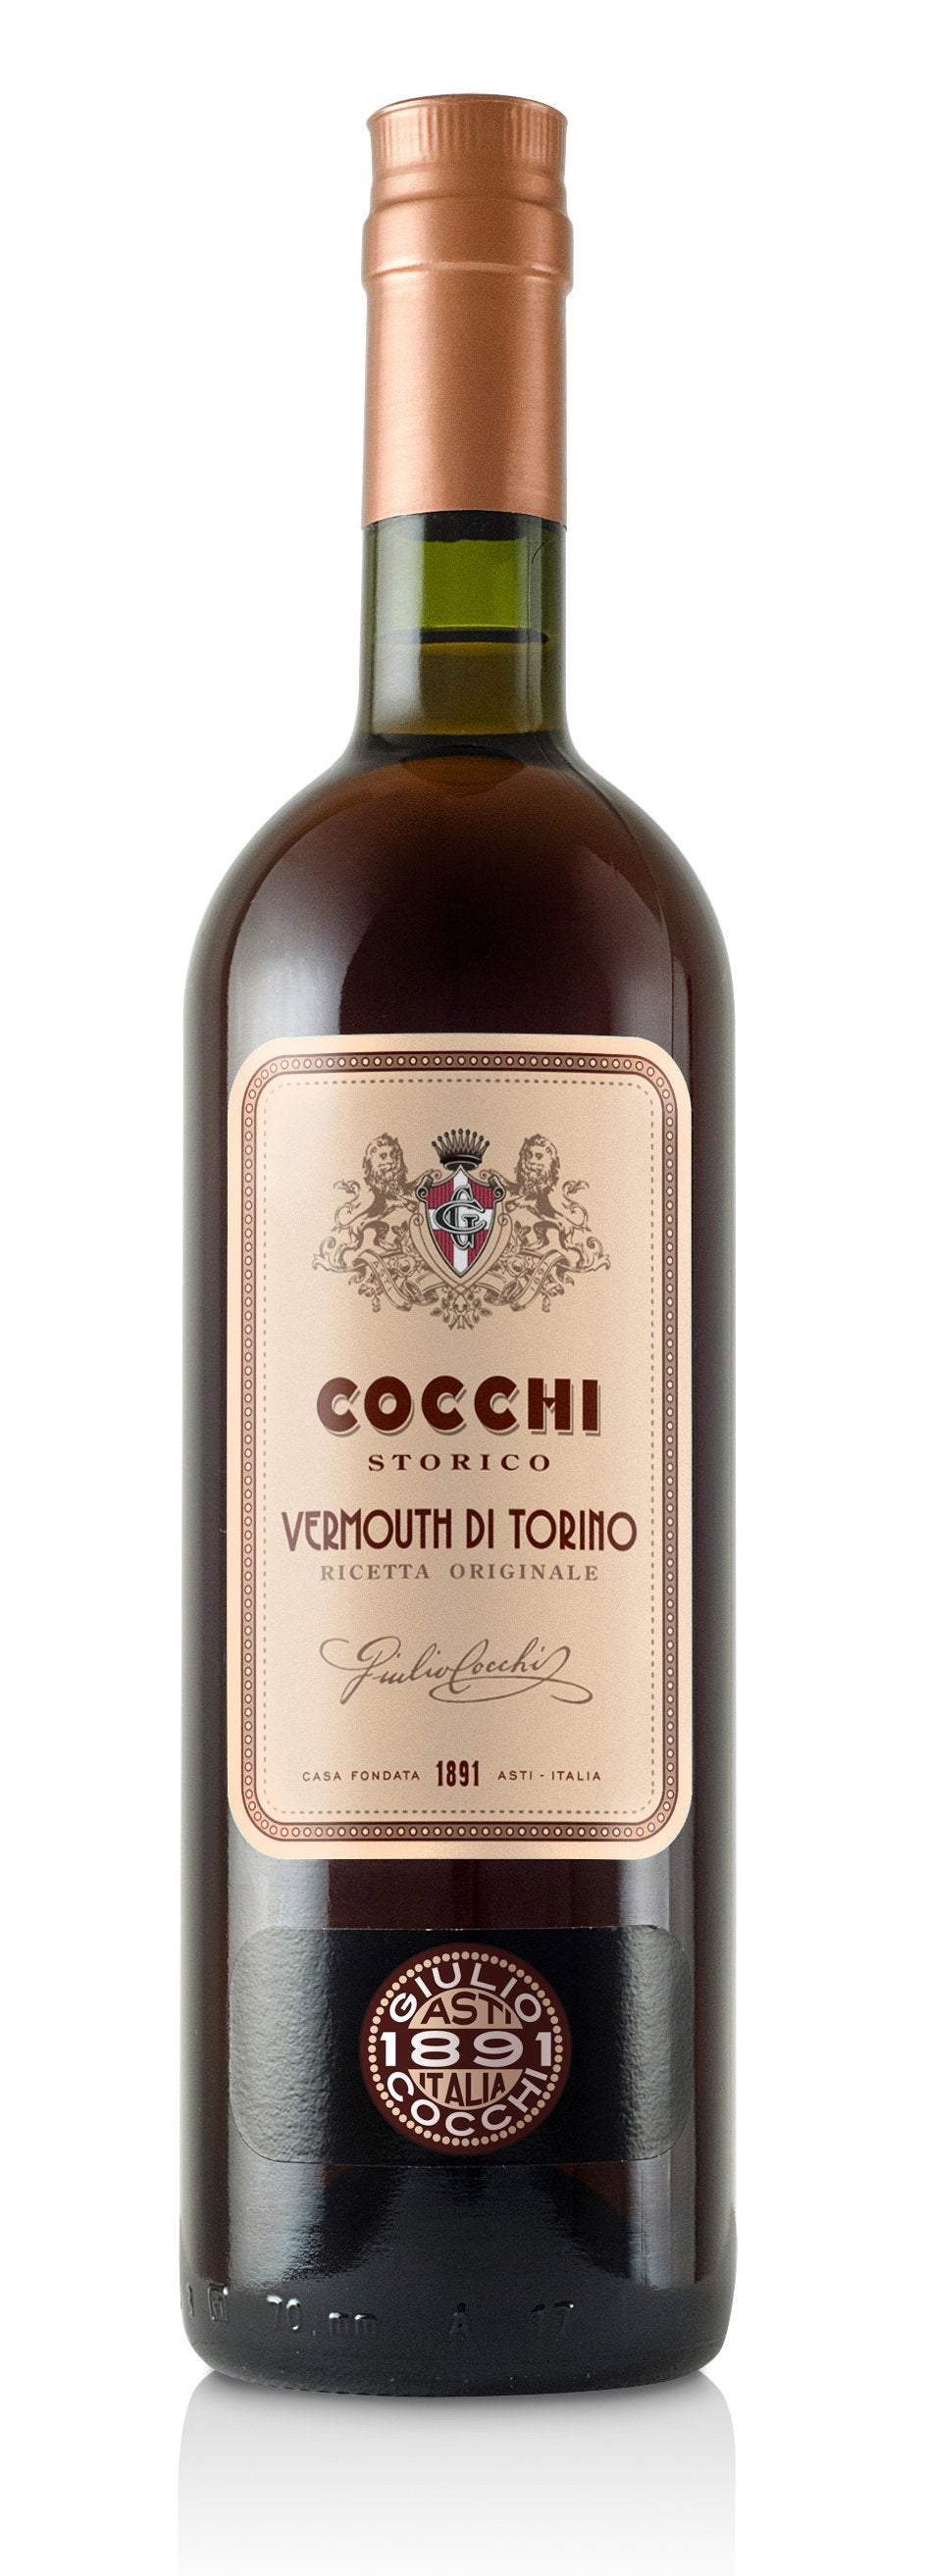 Cocchi Storico Vermouth di Torino, 16%